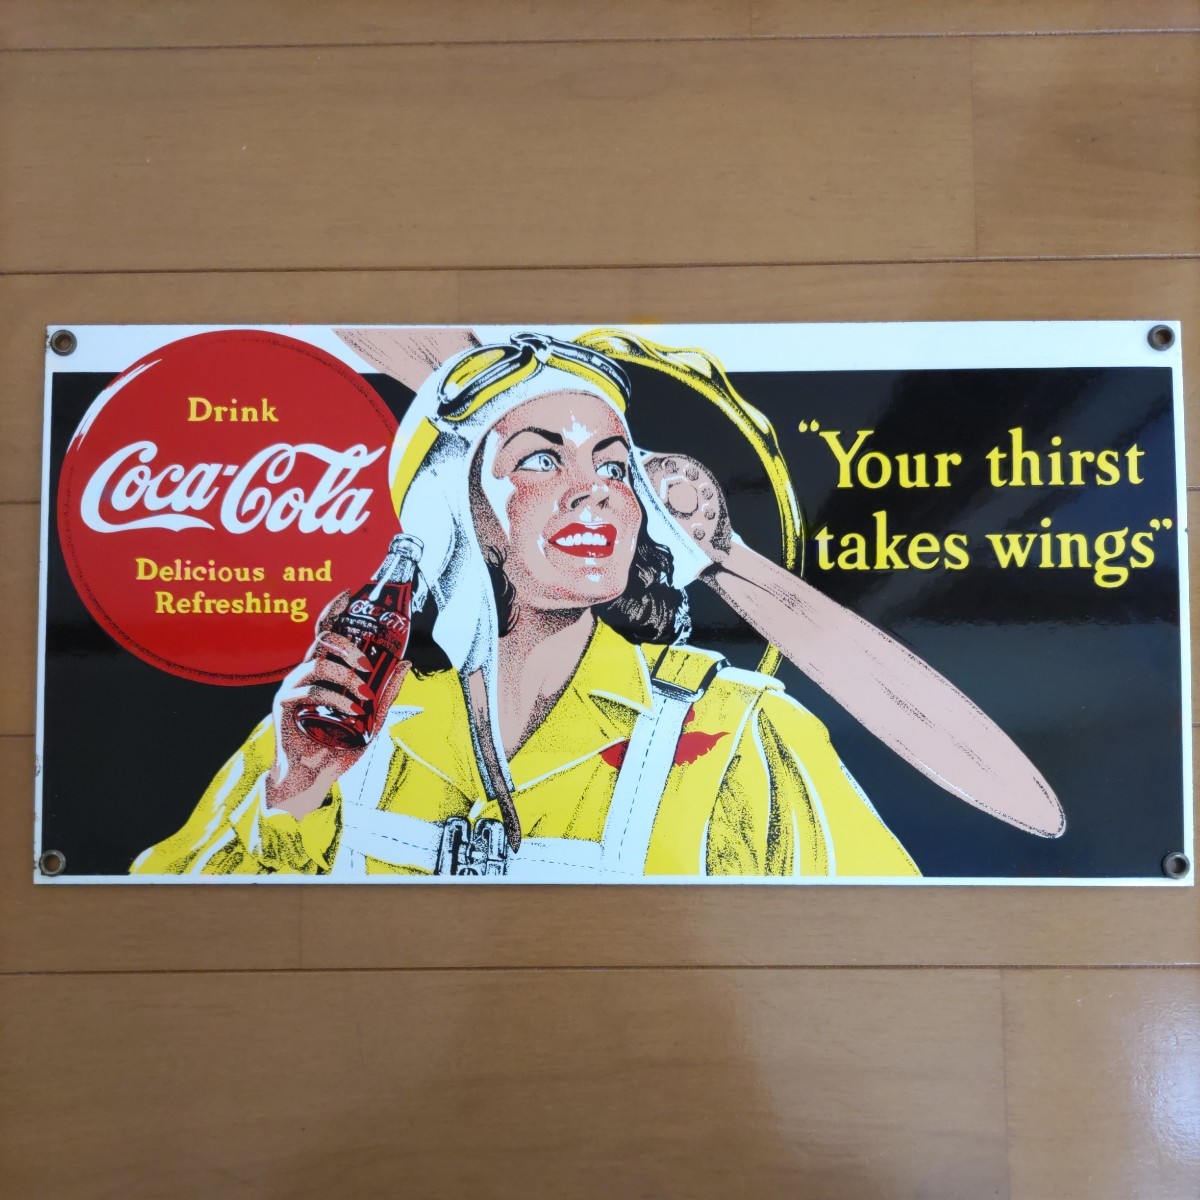 ヴィンテージ Coca-Cola コカ・コーラ Your thirst takes wings サインプレート 36.6cmx18cm メタル624g ヘビーウエイト Ande Rooney社製